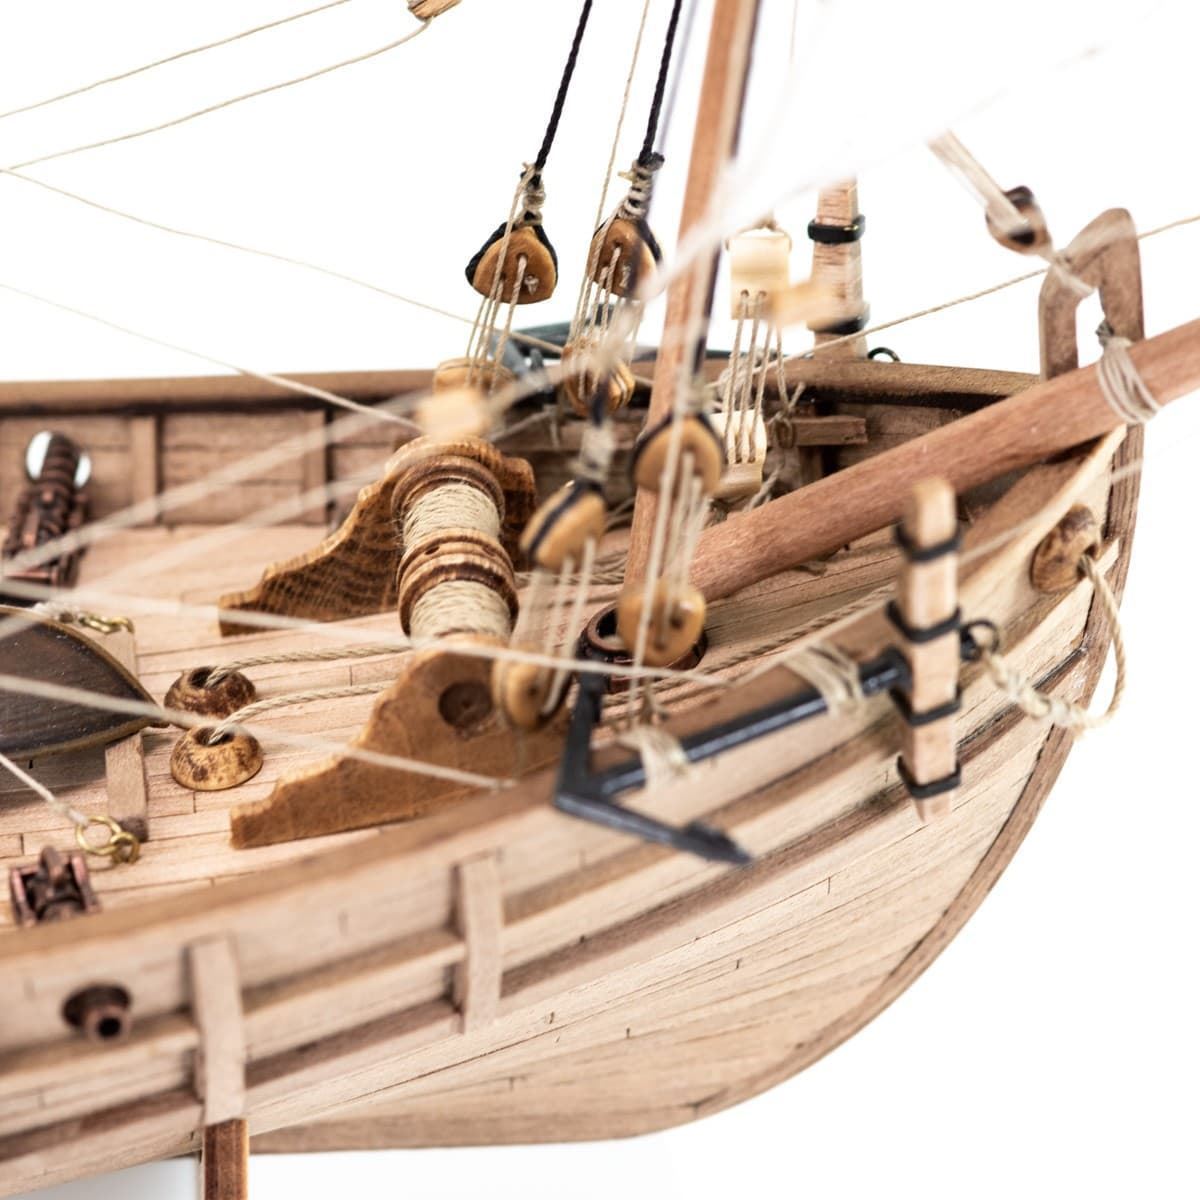 Maqueta barco de madera: Carabela Pinta - Imagen 7